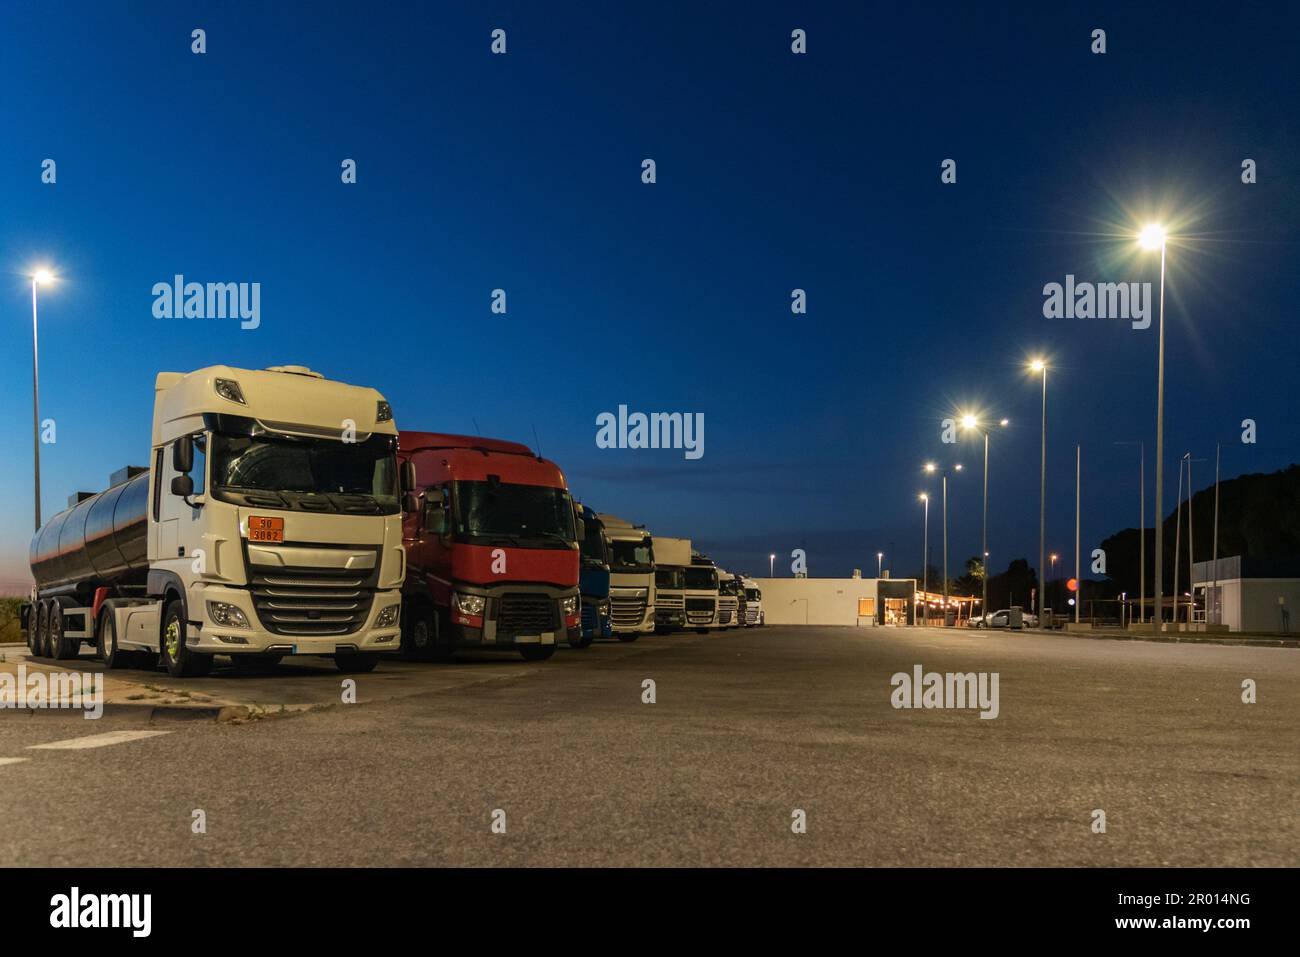 camiones descansando en estacion de servicio